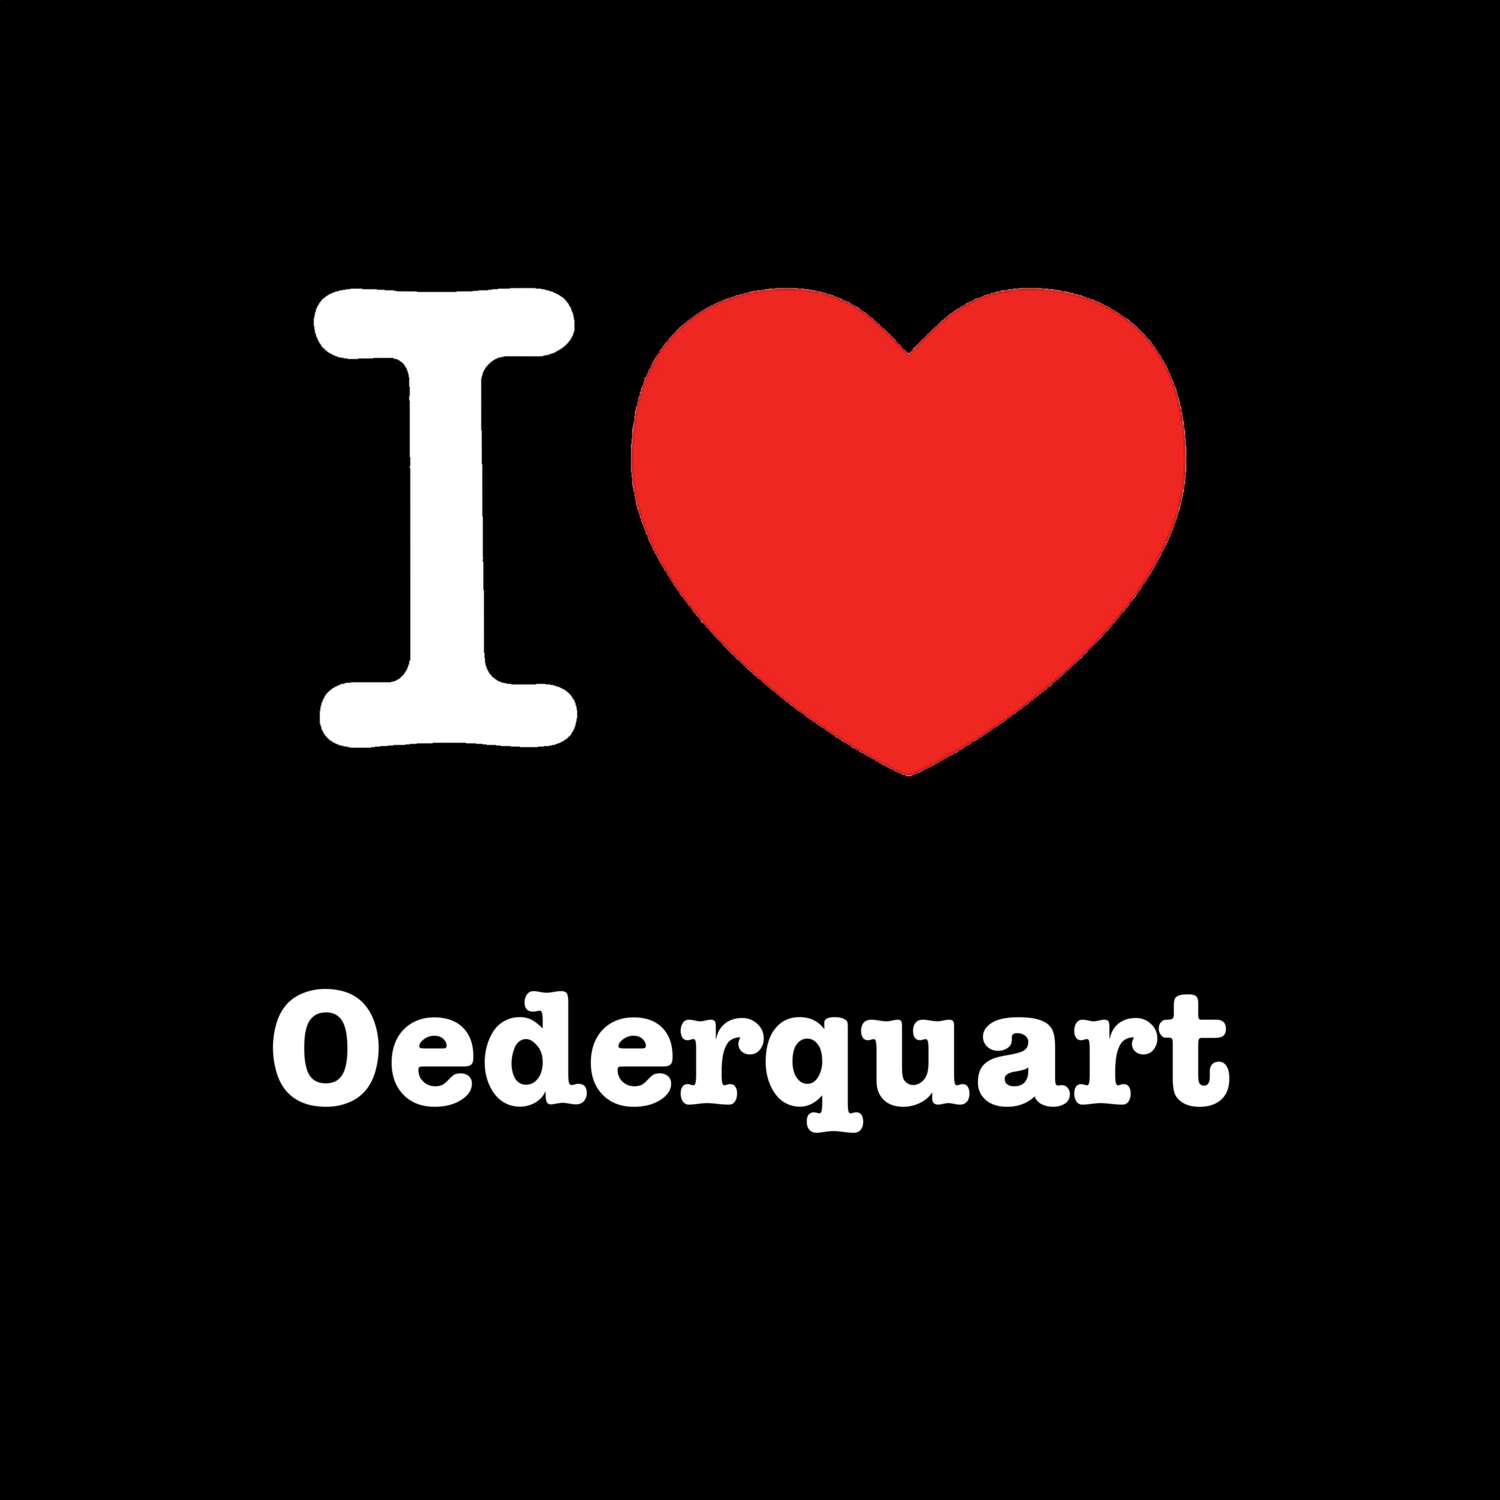 Oederquart T-Shirt »I love«